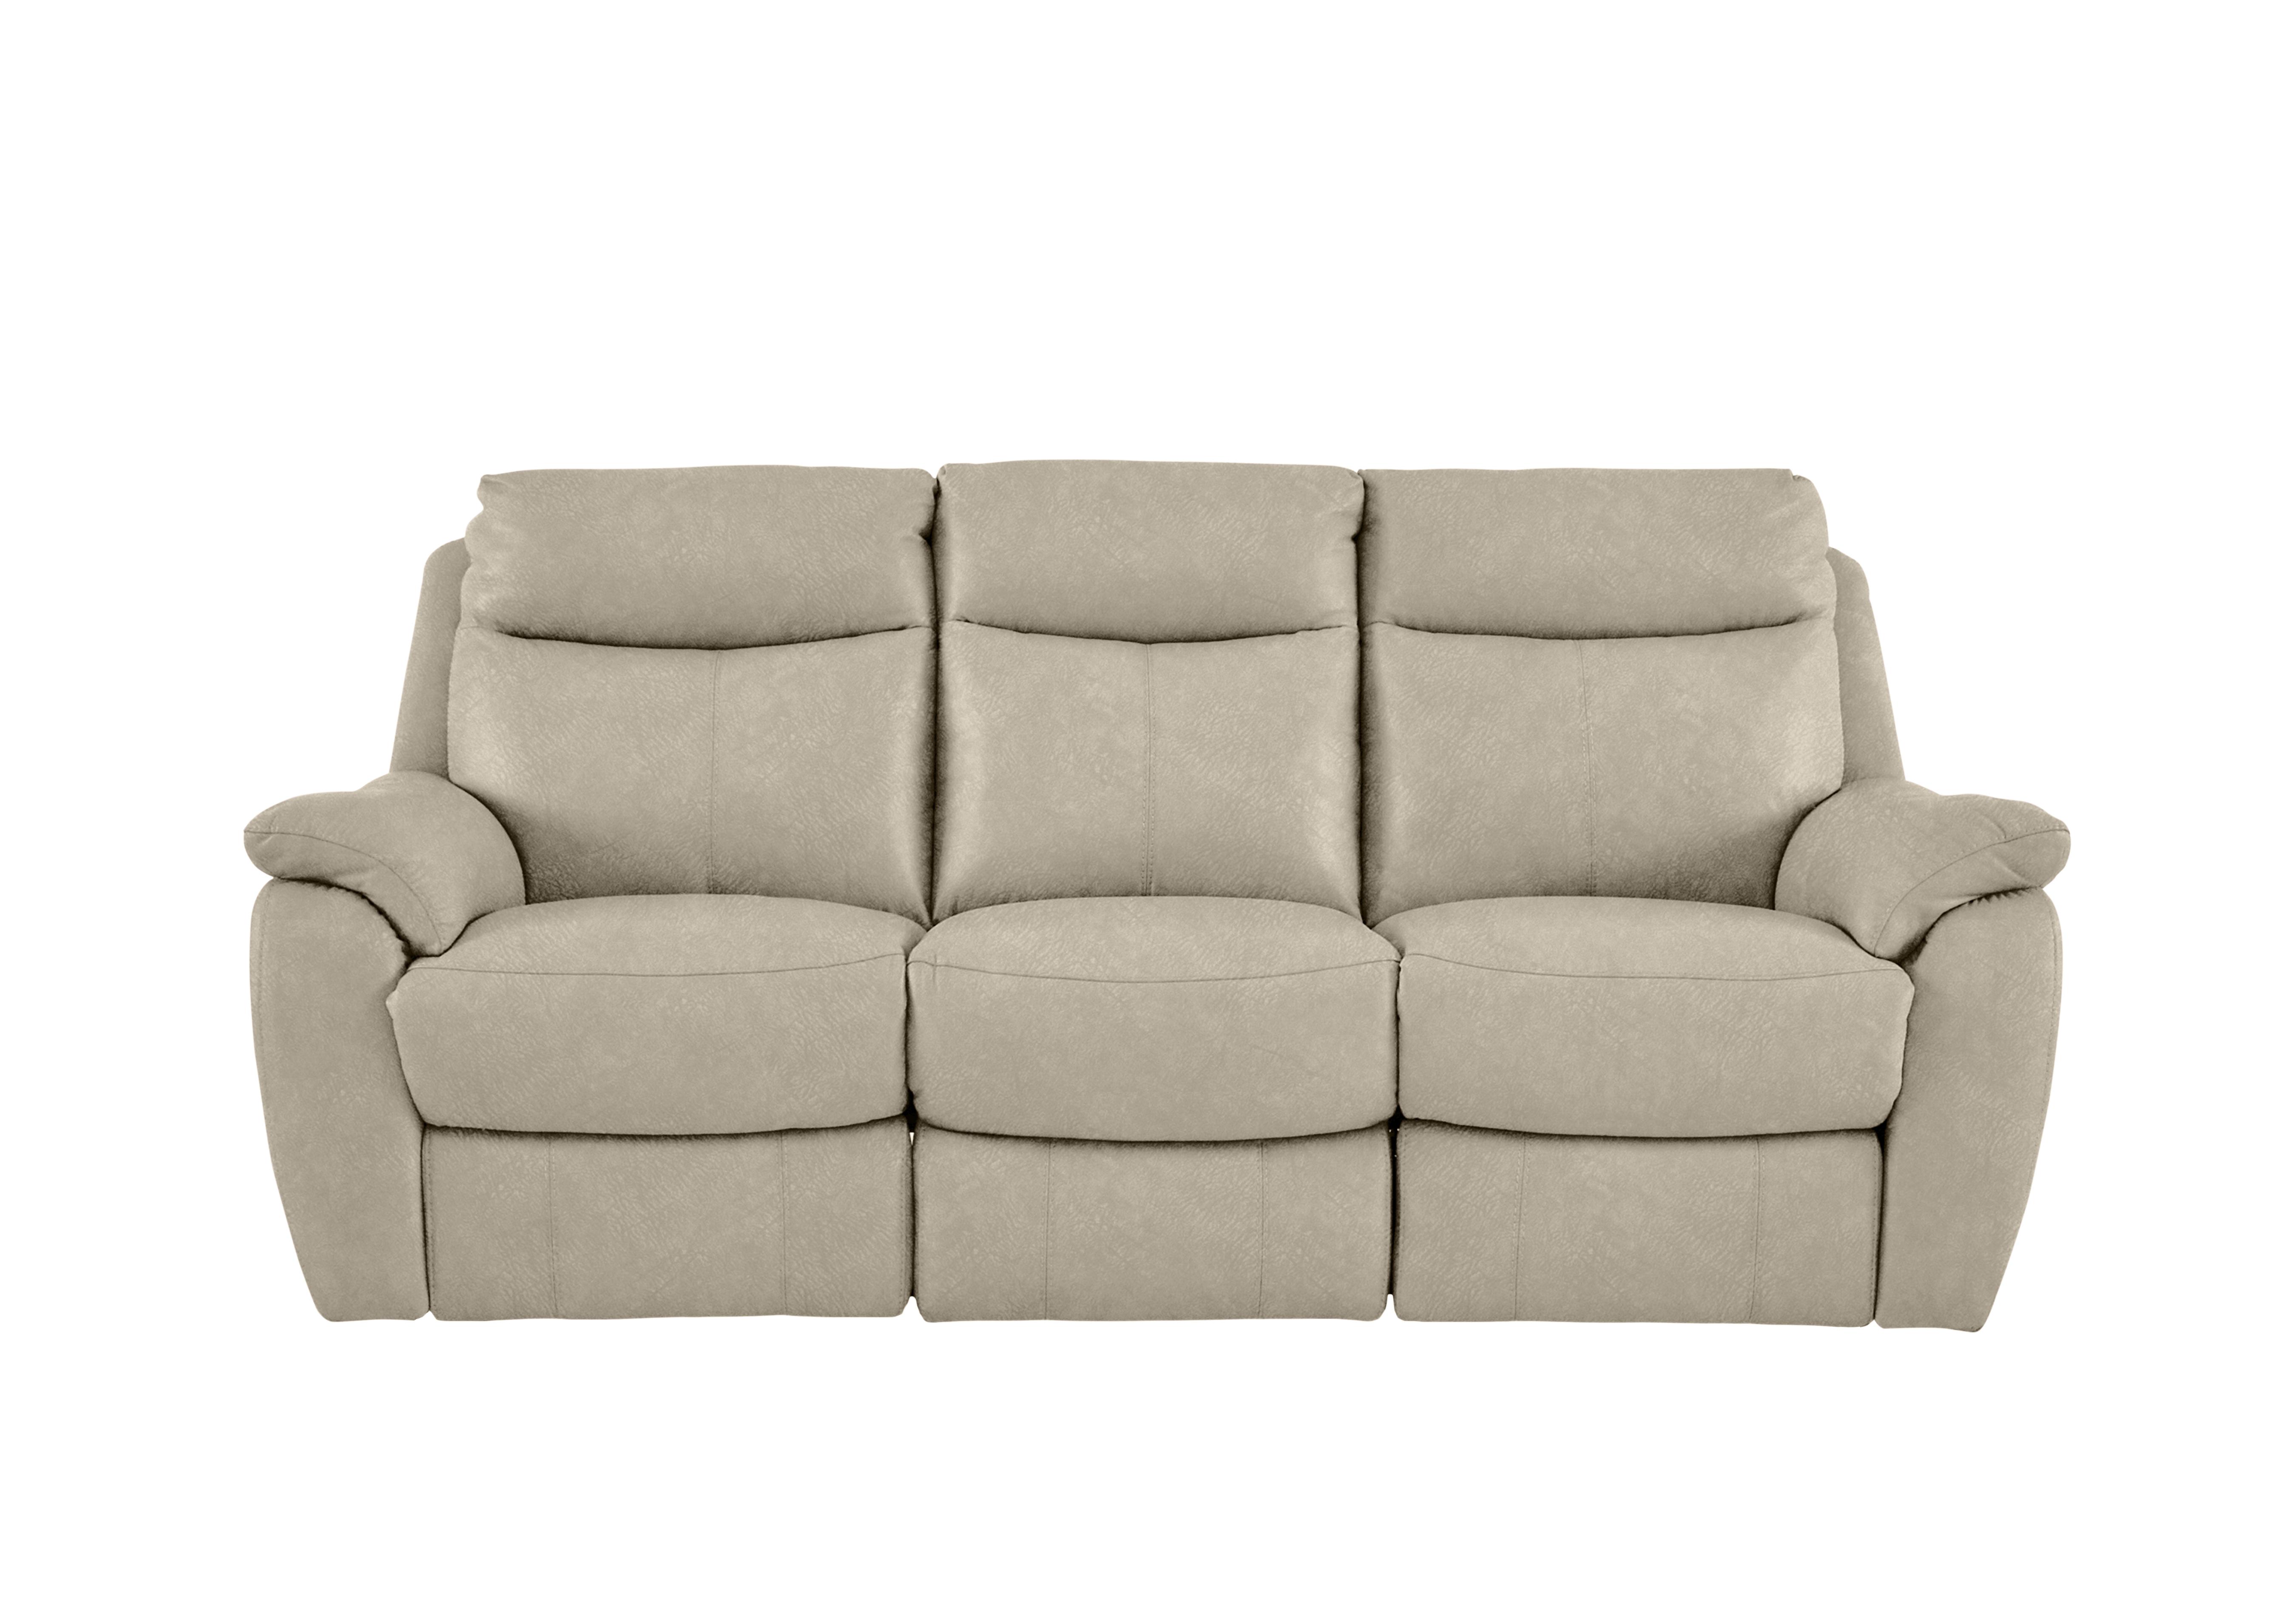 Snug 3 Seater Fabric Sofa in Bfa-Bnn-R26 Fv2 Cream on Furniture Village